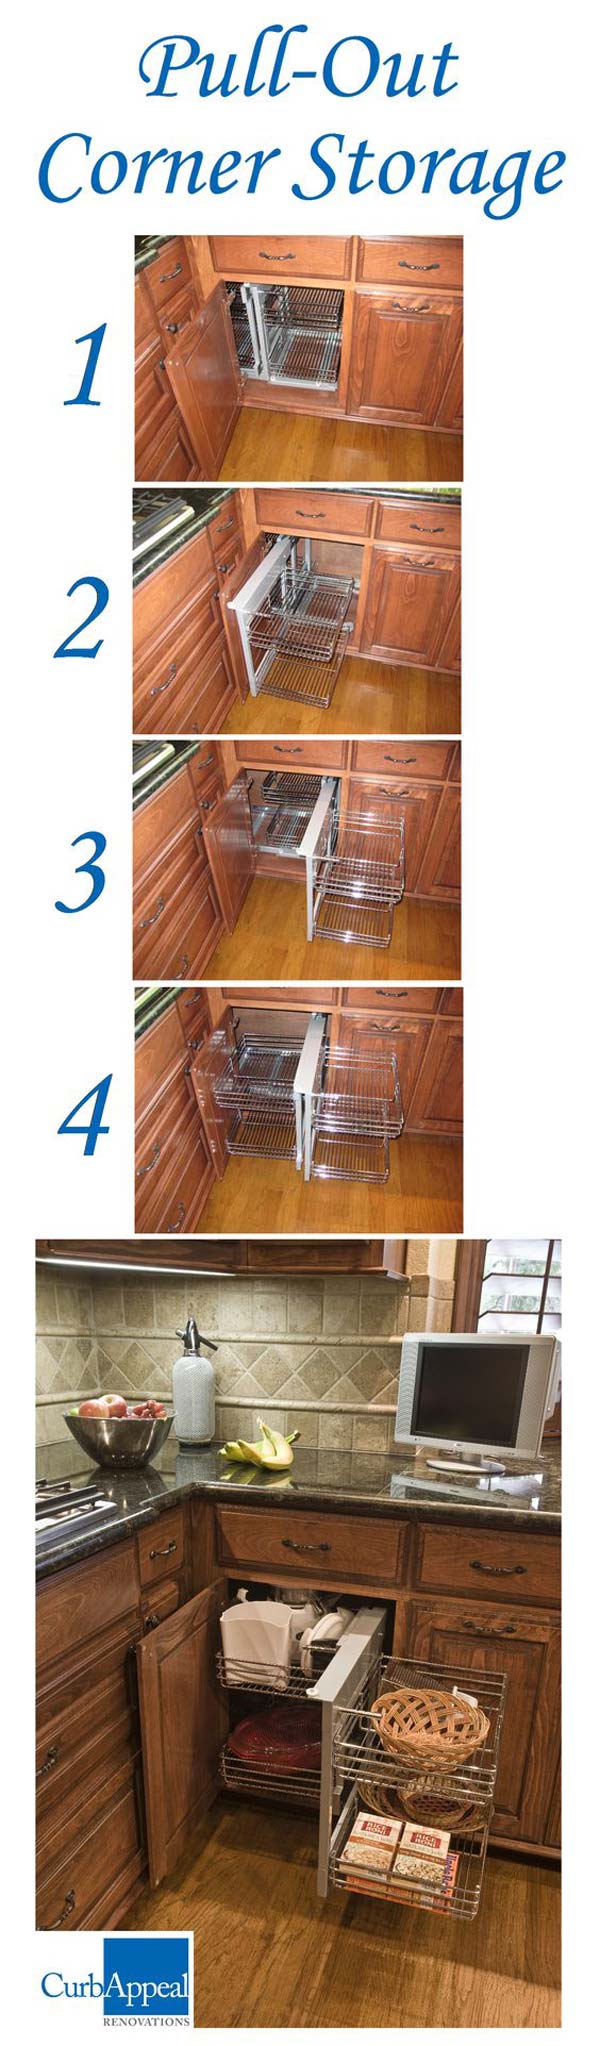 Storage for corner kitchen cabinet 6 4.jpg